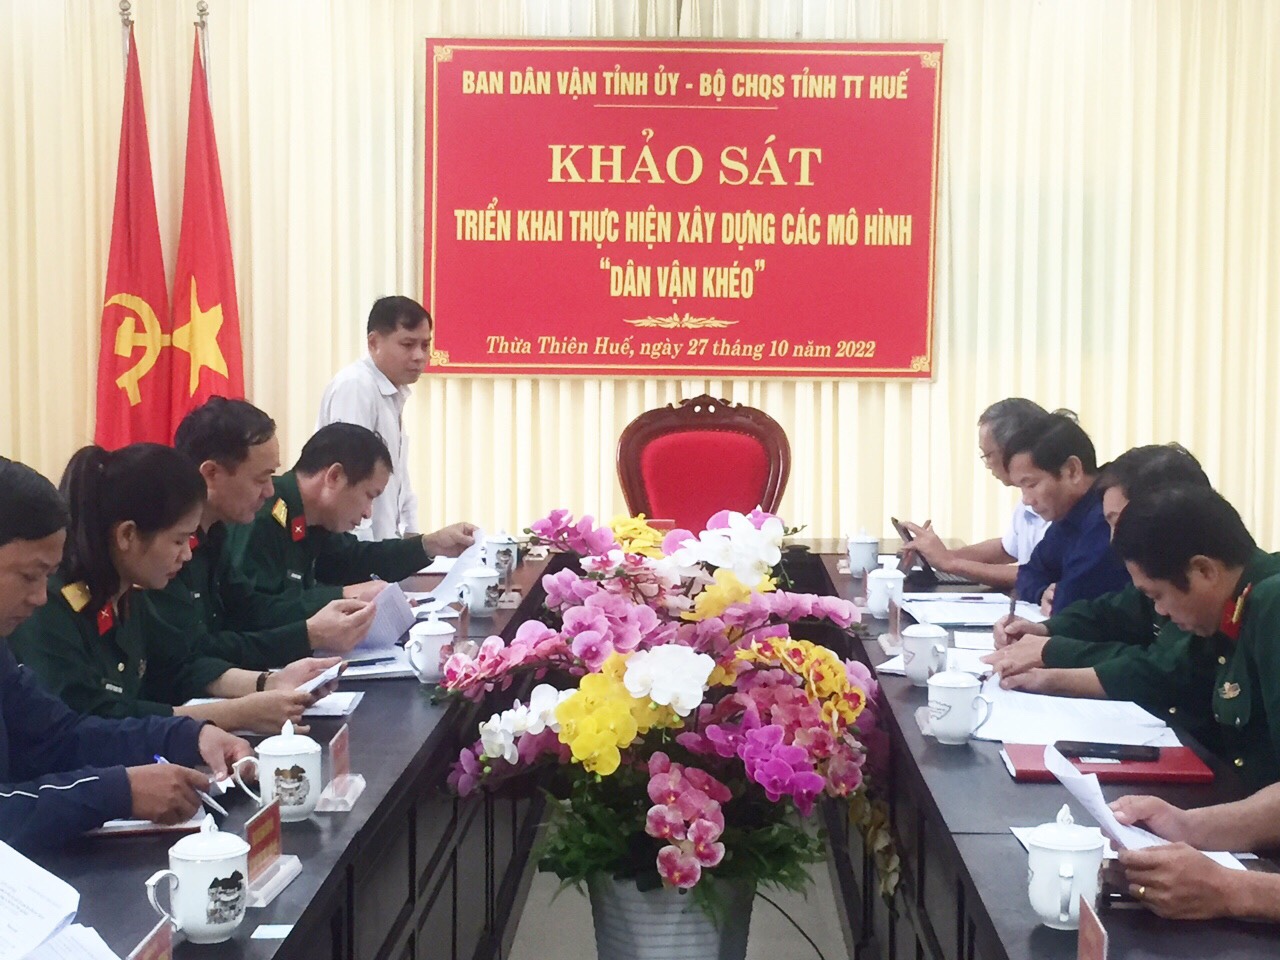 Đồng chí Nguyễn Xuân Dương, Phó Trưởng Ban Dân vận Tỉnh ủy phát biểu chỉ đạo tại buổi khảo sát